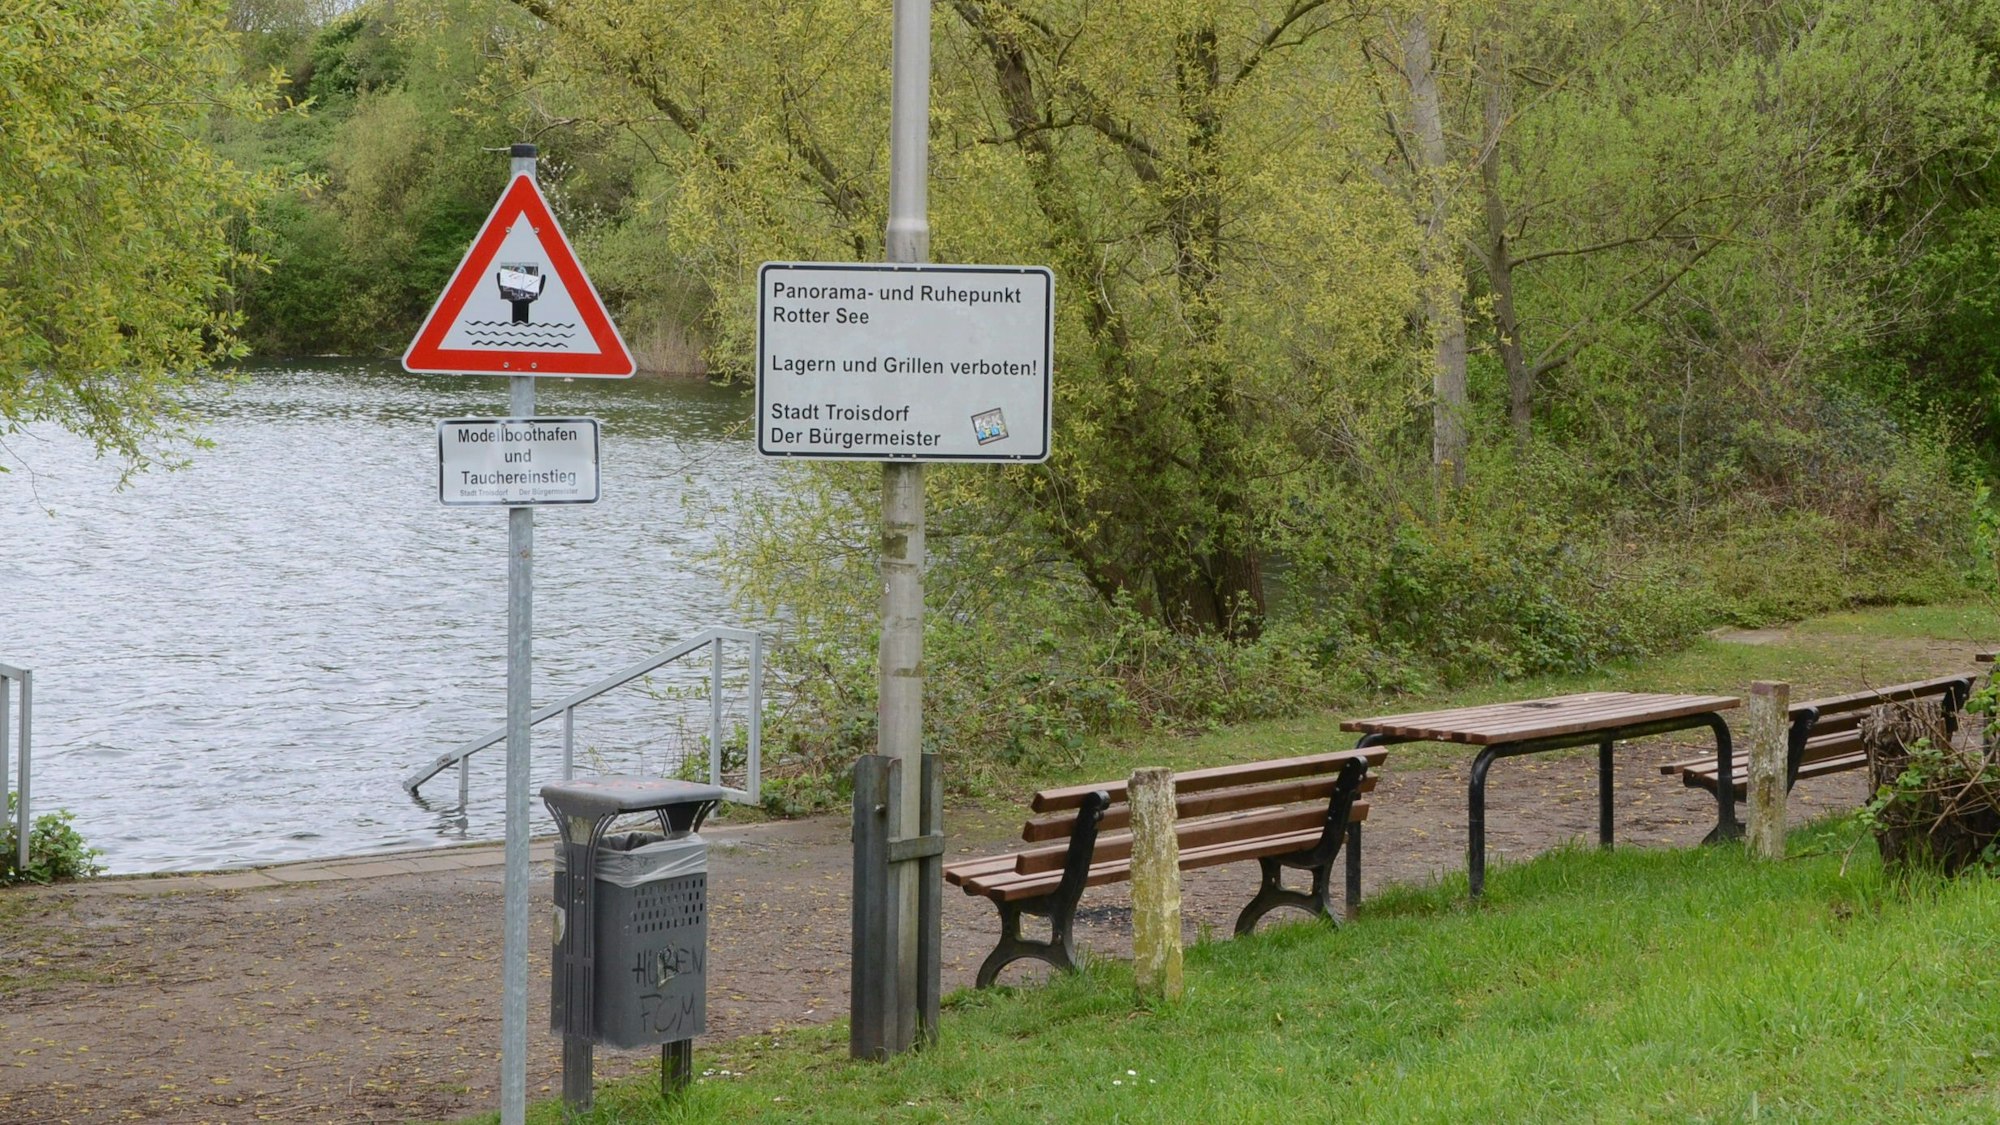 Fußweg an einem See; Bänke, ein Tisch und ein Papierkorb. Auf einem Schild steht „Panorama- und Ruhepunkt Rotter See“.